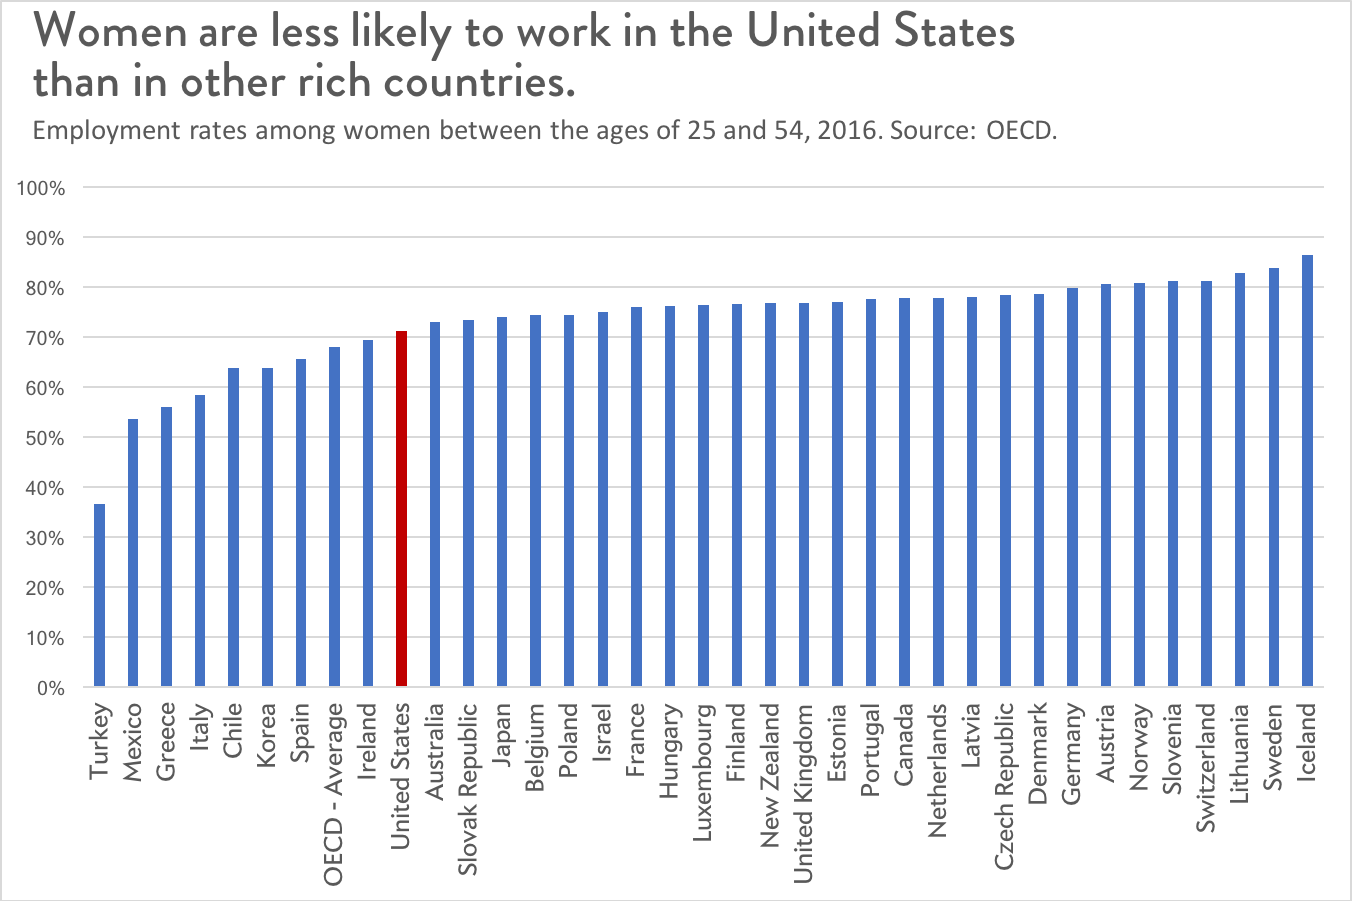 Women's labor force participation